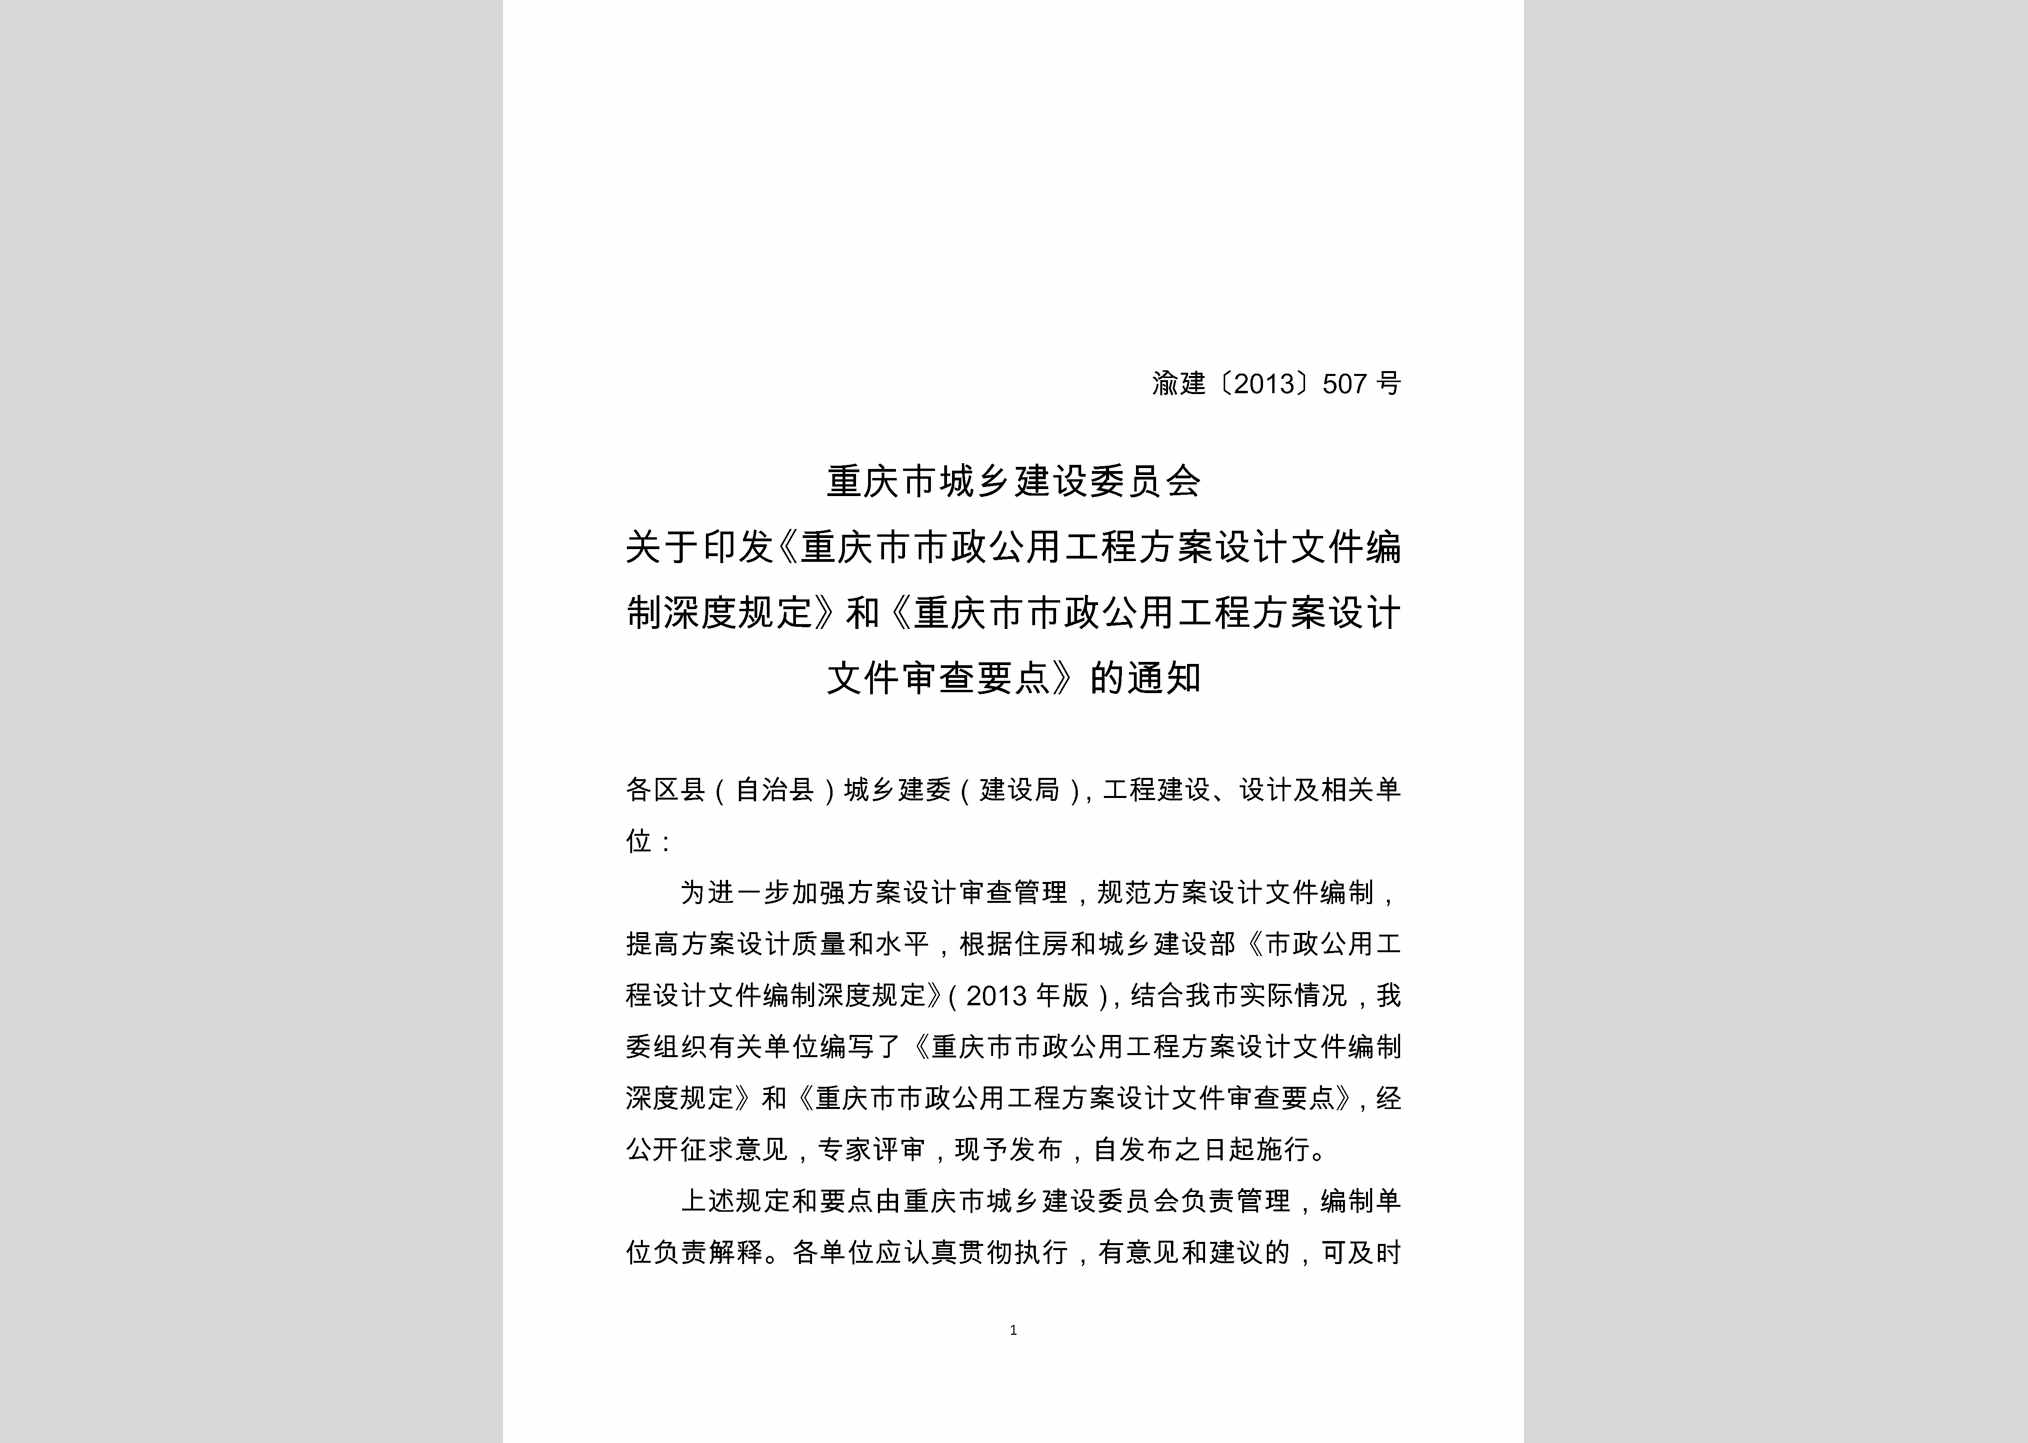 渝建[2013]507号：关于印发《重庆市市政公用工程方案设计文件编制深度规定》和《重庆市市政公用工程方案设计文件审查要点》的通知